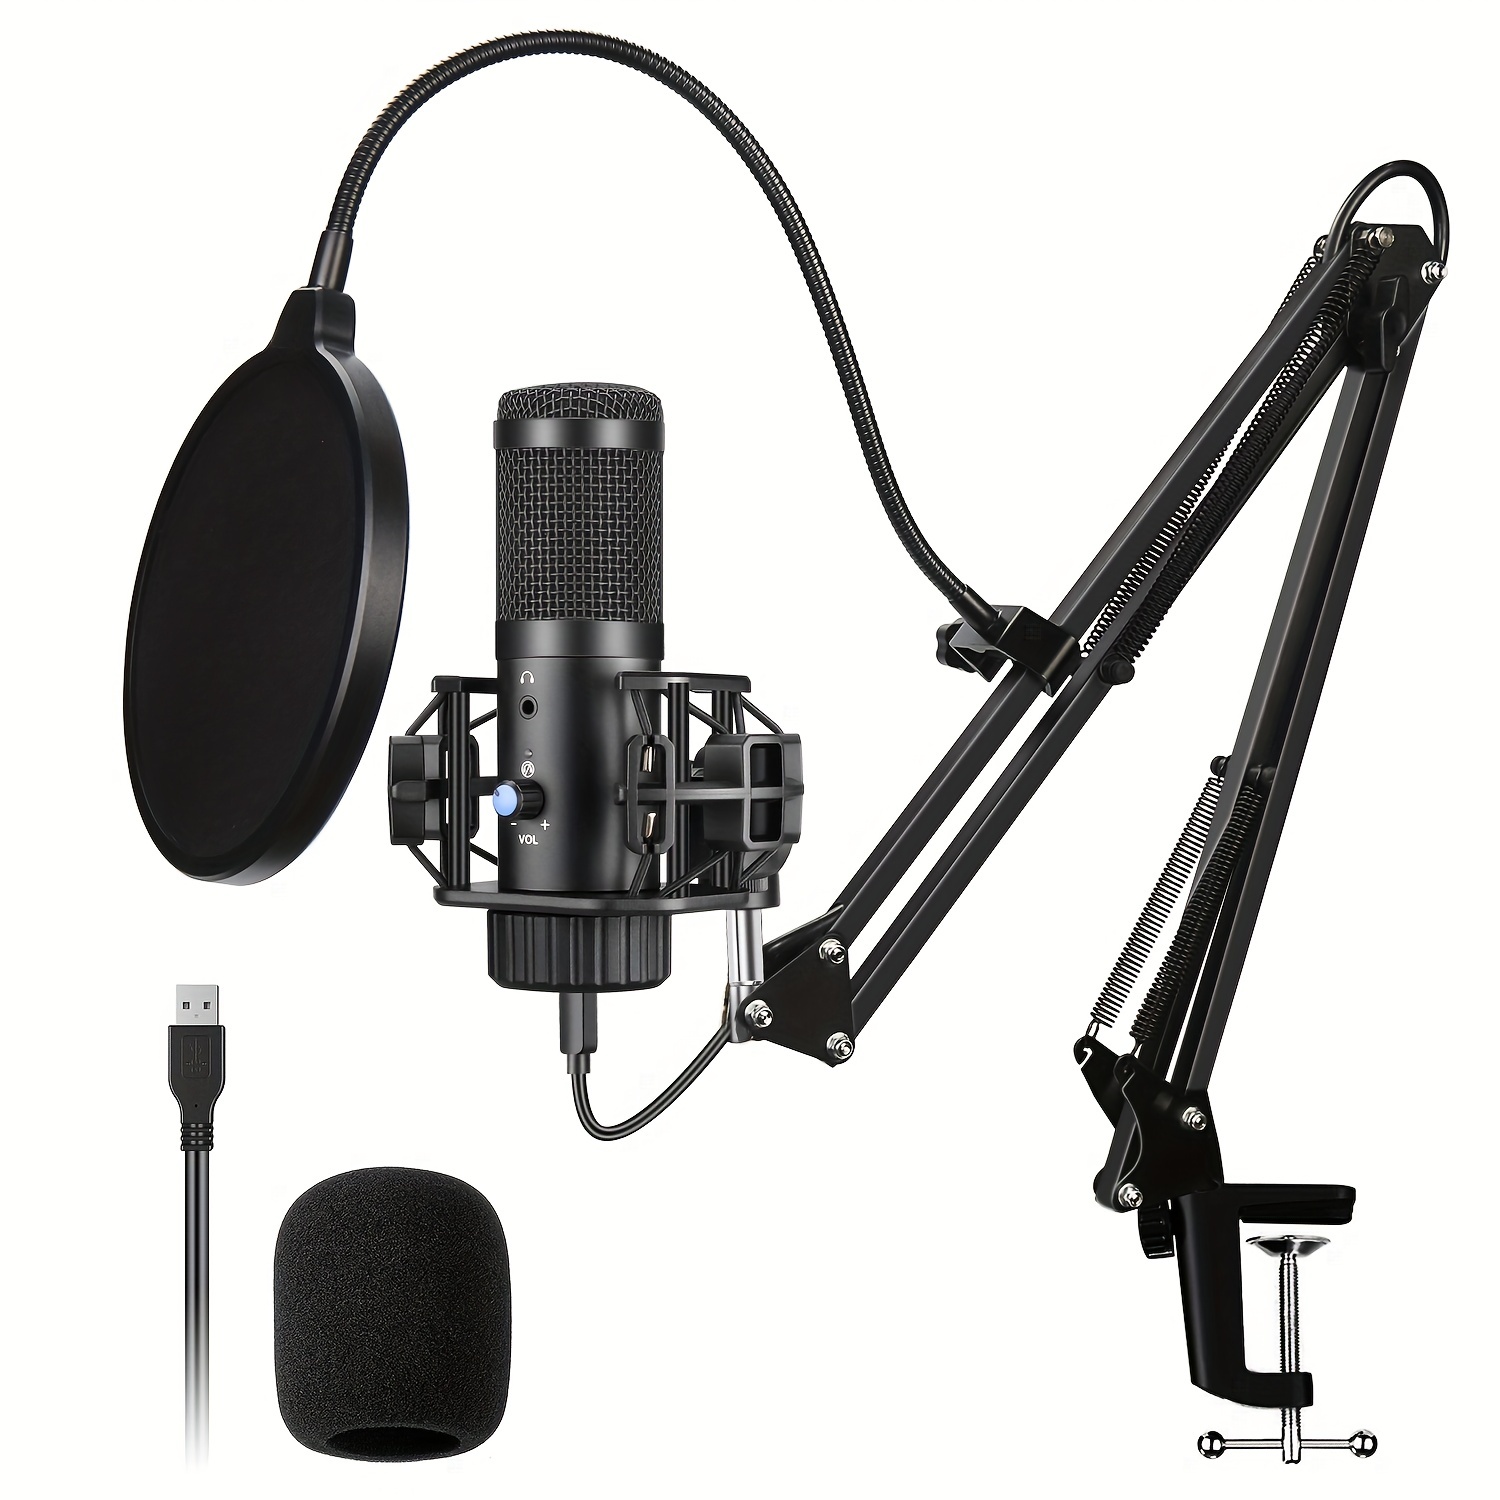 AK-5 Microphone À Condensateur USB Pour Le Streaming, Le Podcasting,  L'enregistrement En Studio Et Les Jeux